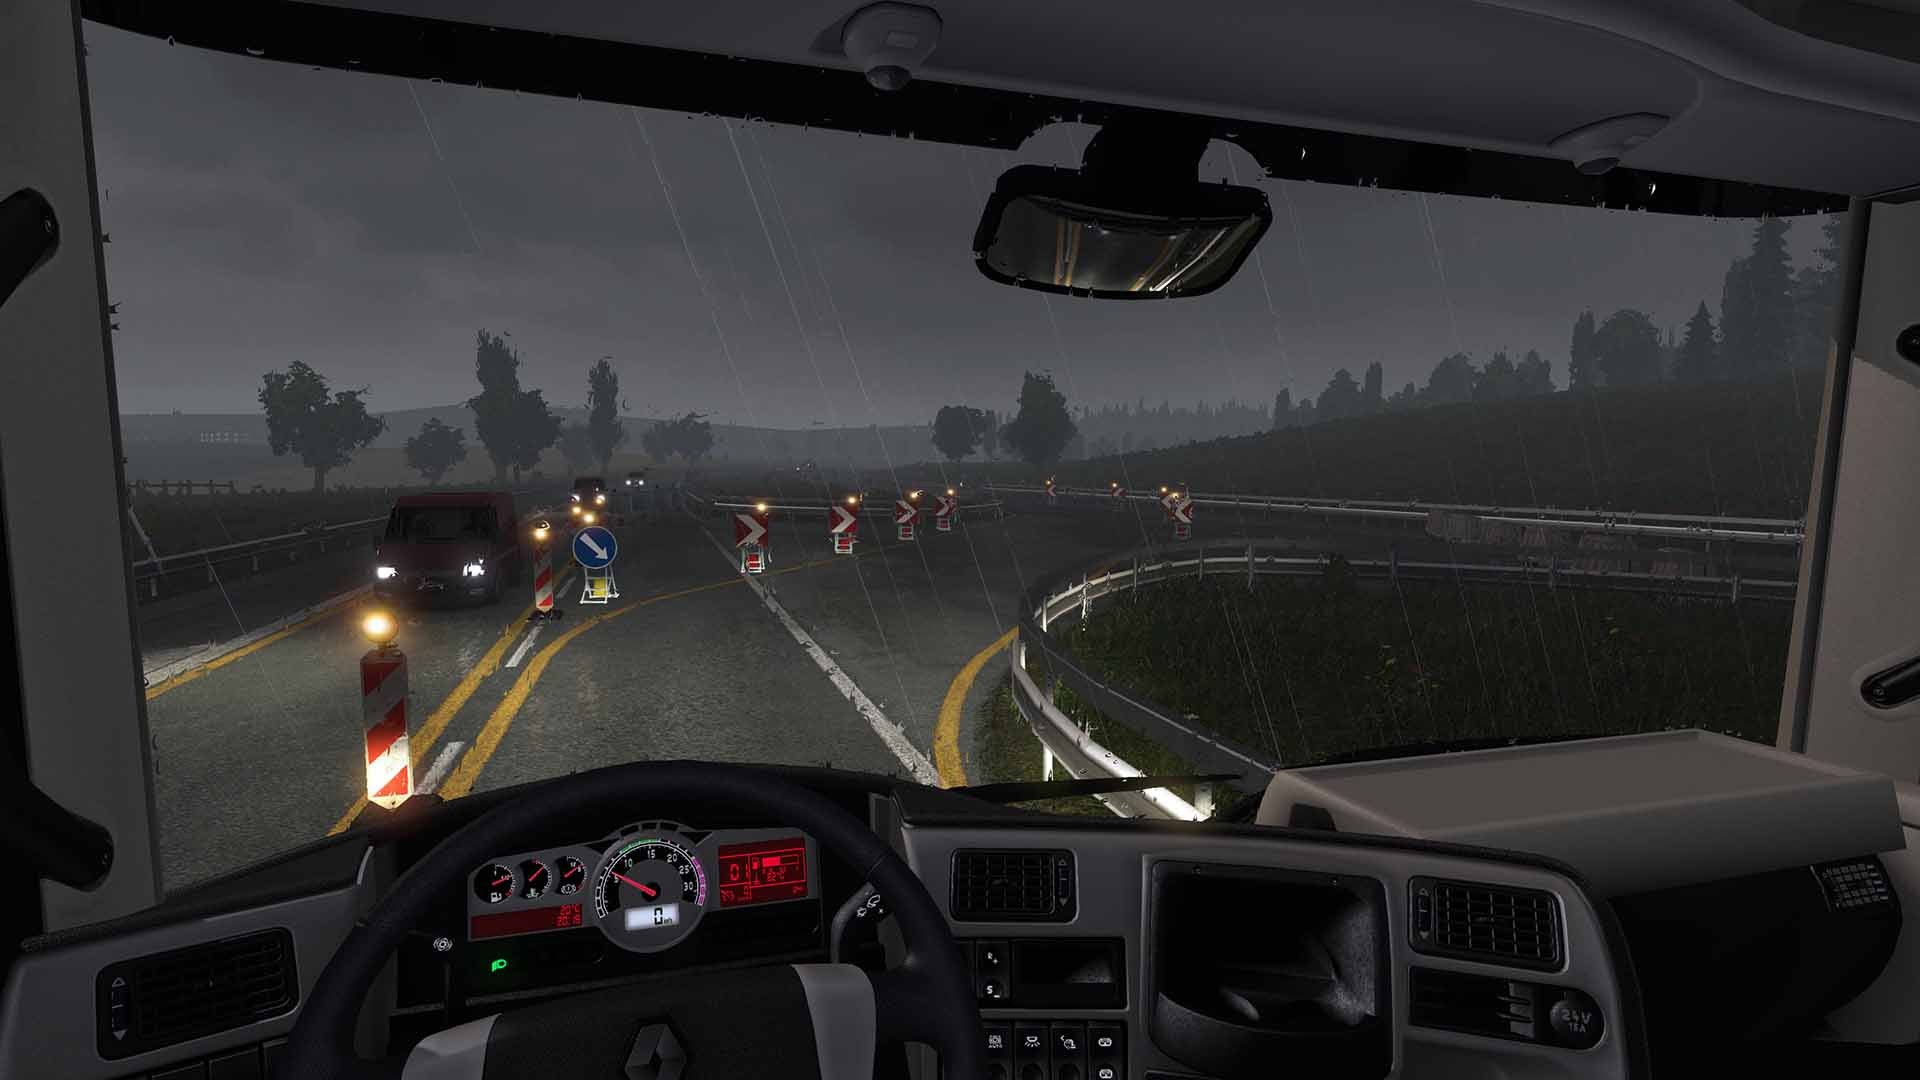 Euro Truck Driver Simulator  Aplicações de download da Nintendo